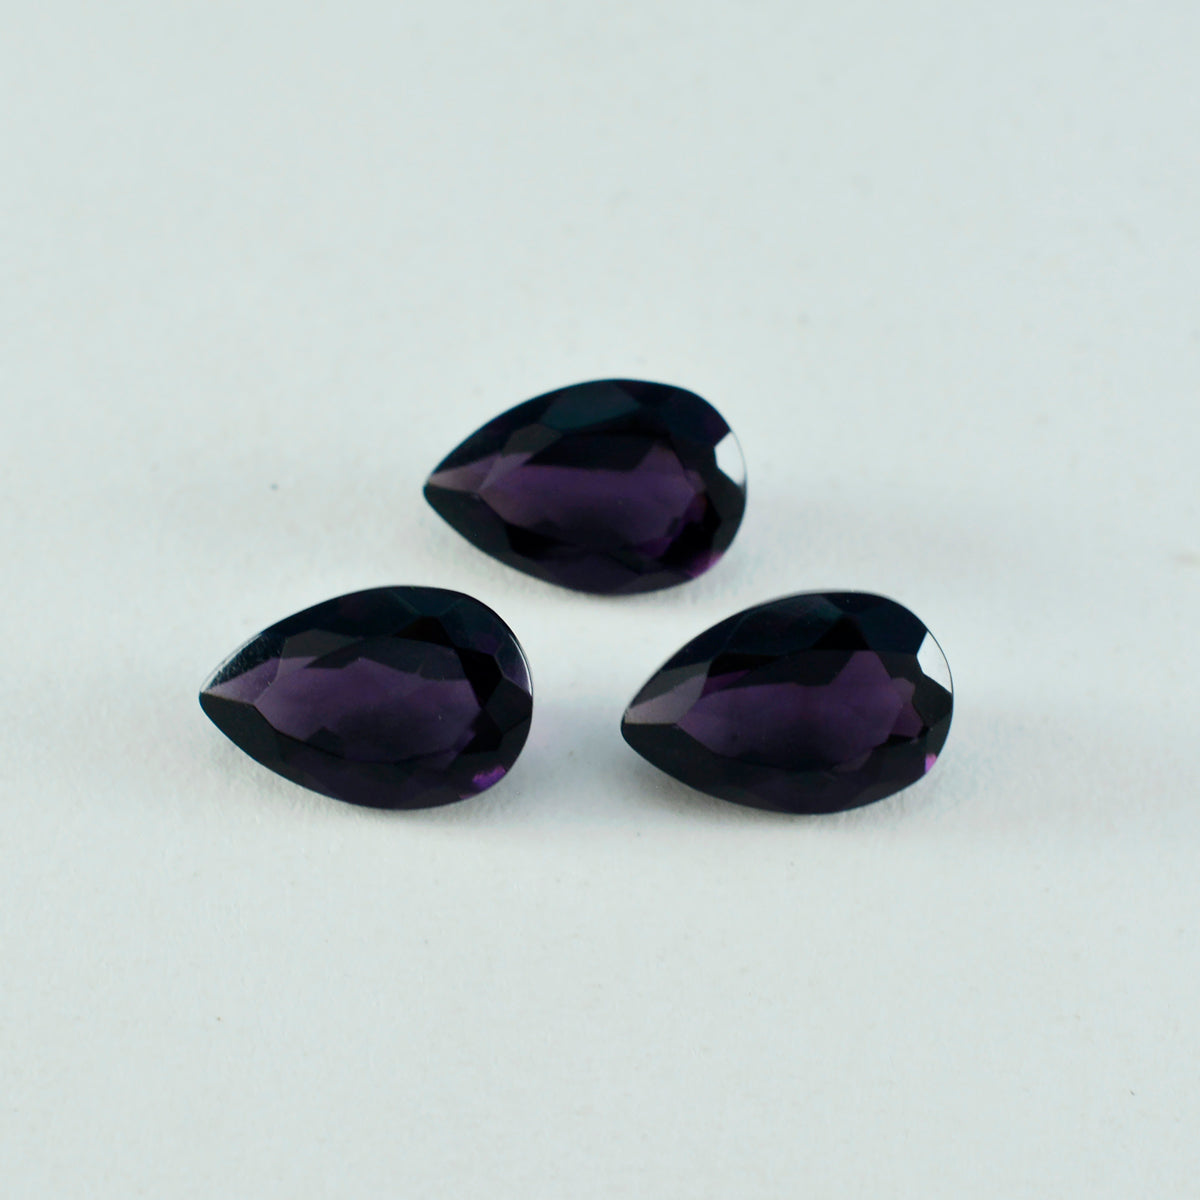 Riyogems 1 pieza de amatista púrpura CZ facetada 8x12 mm forma de pera A+ gemas sueltas de calidad